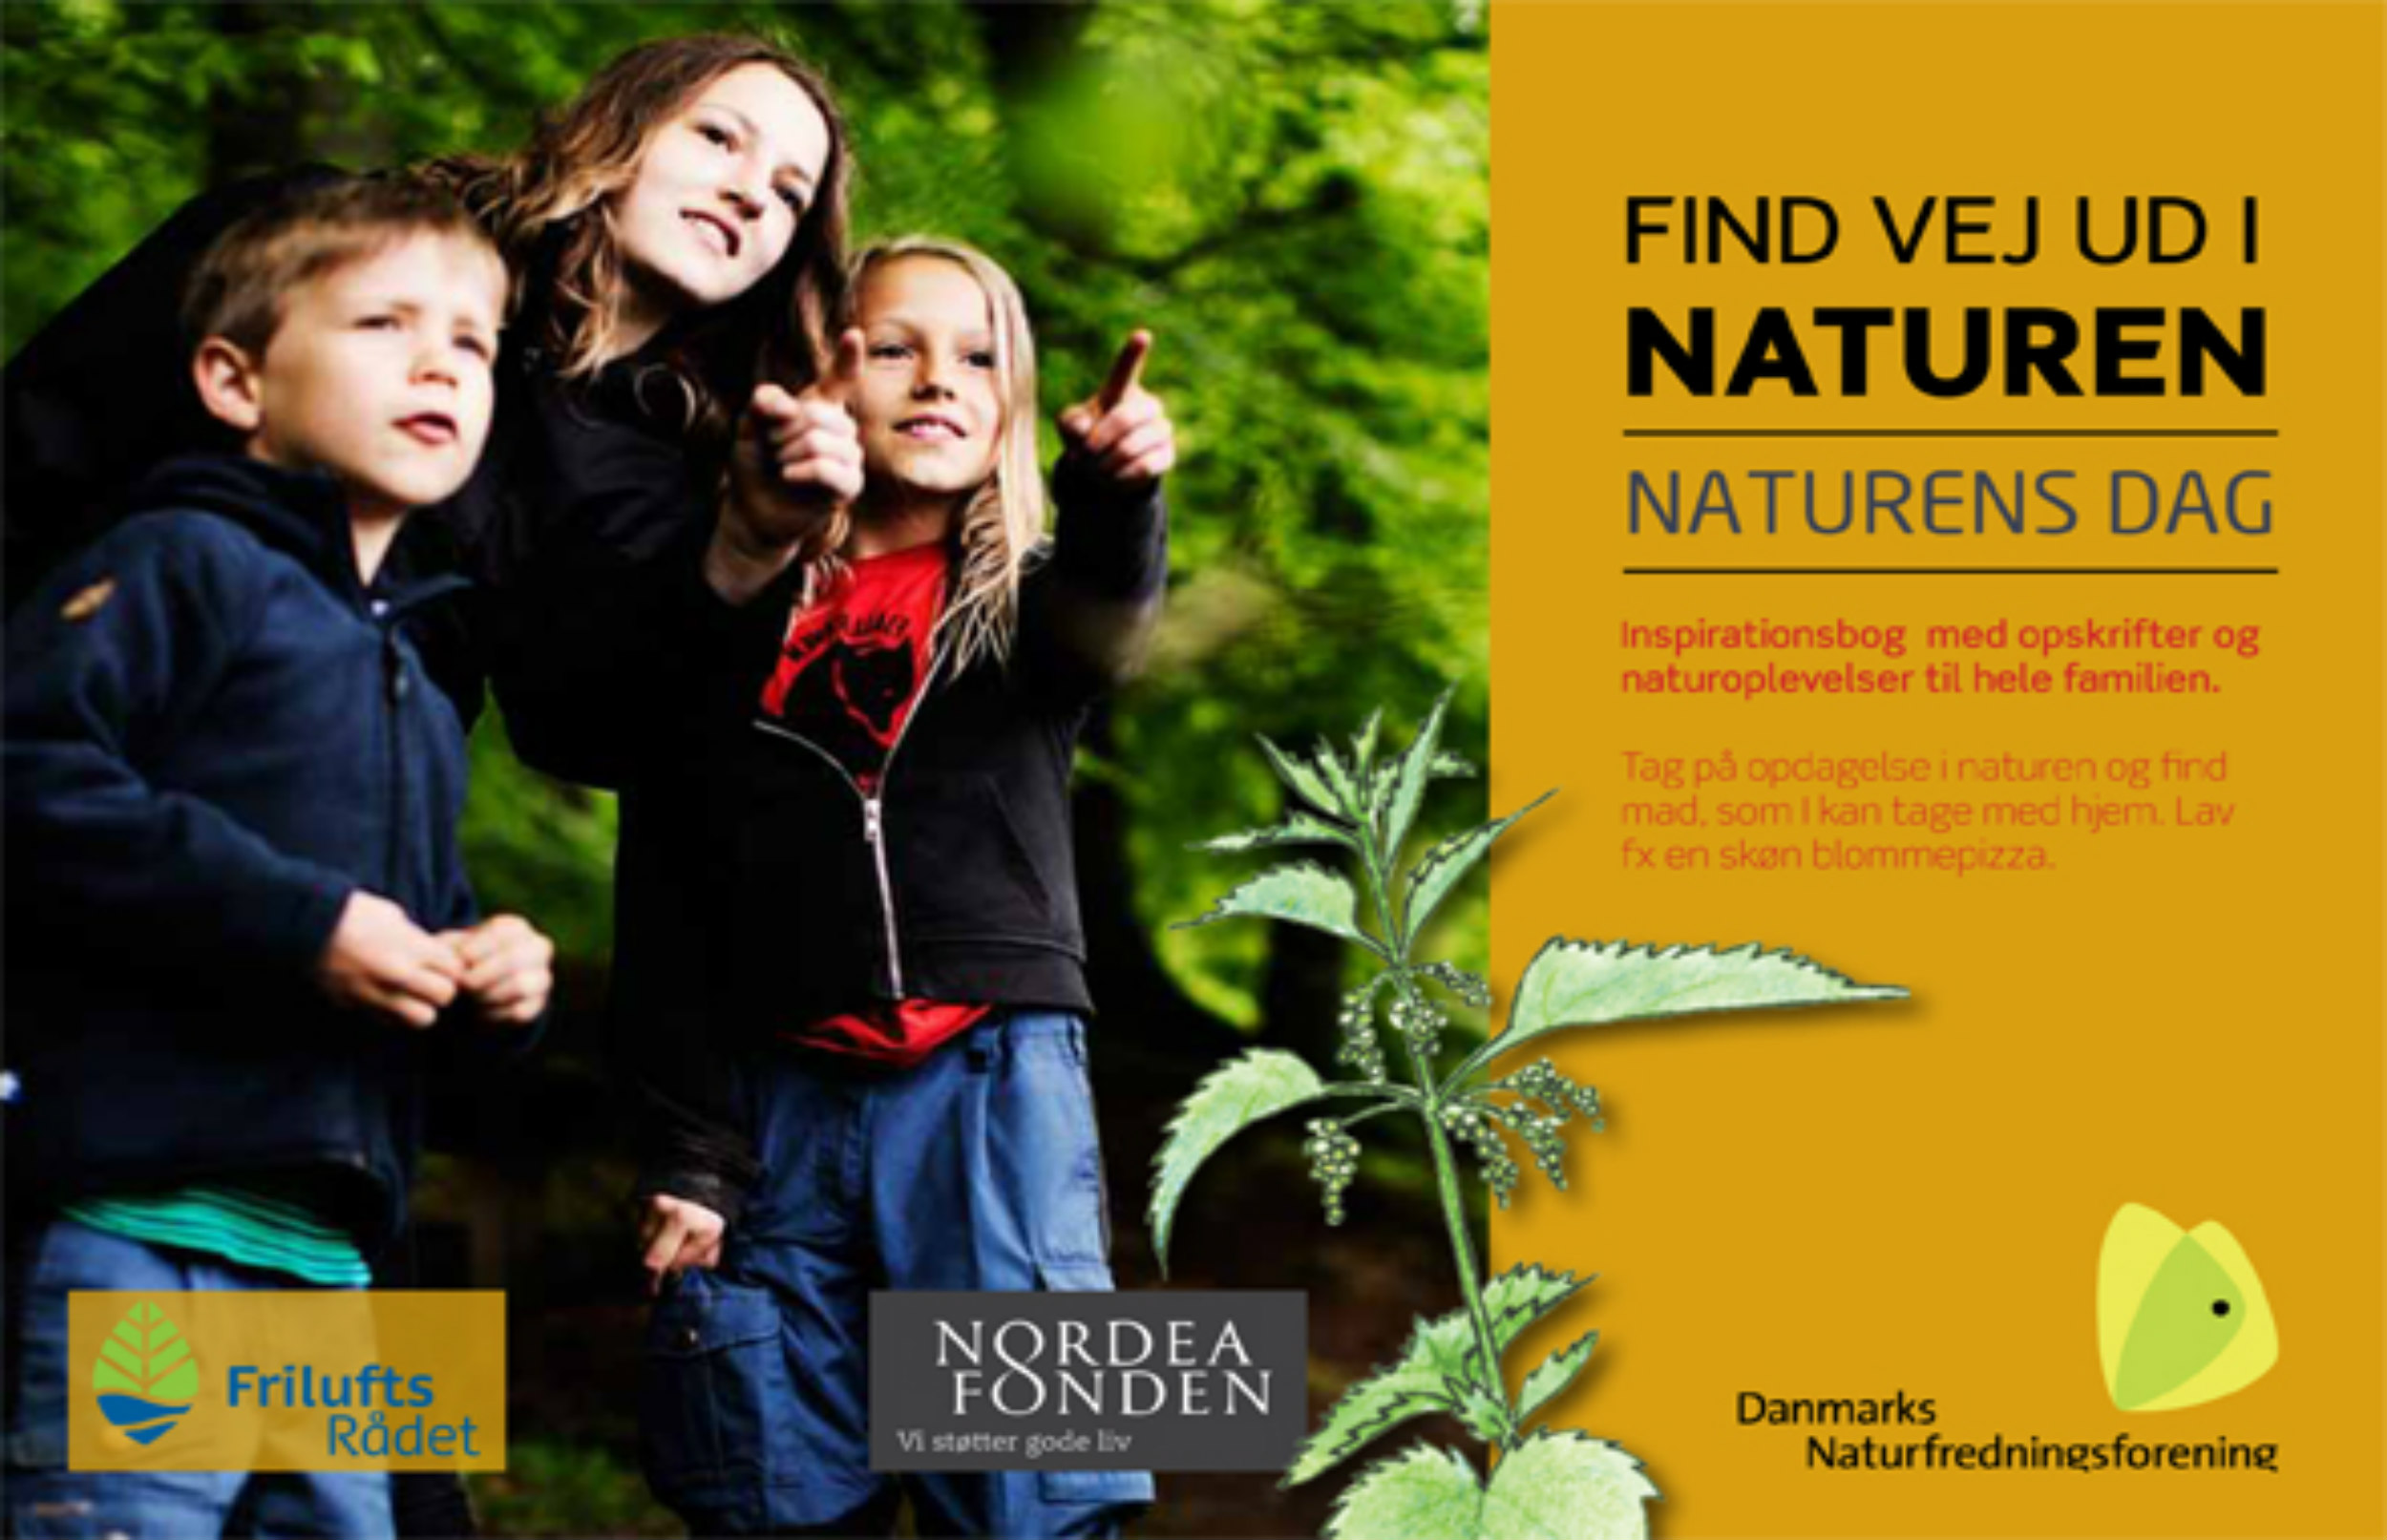 Undervisningsmateriale for skoler om Find ved ud i naturen til Naturens dag